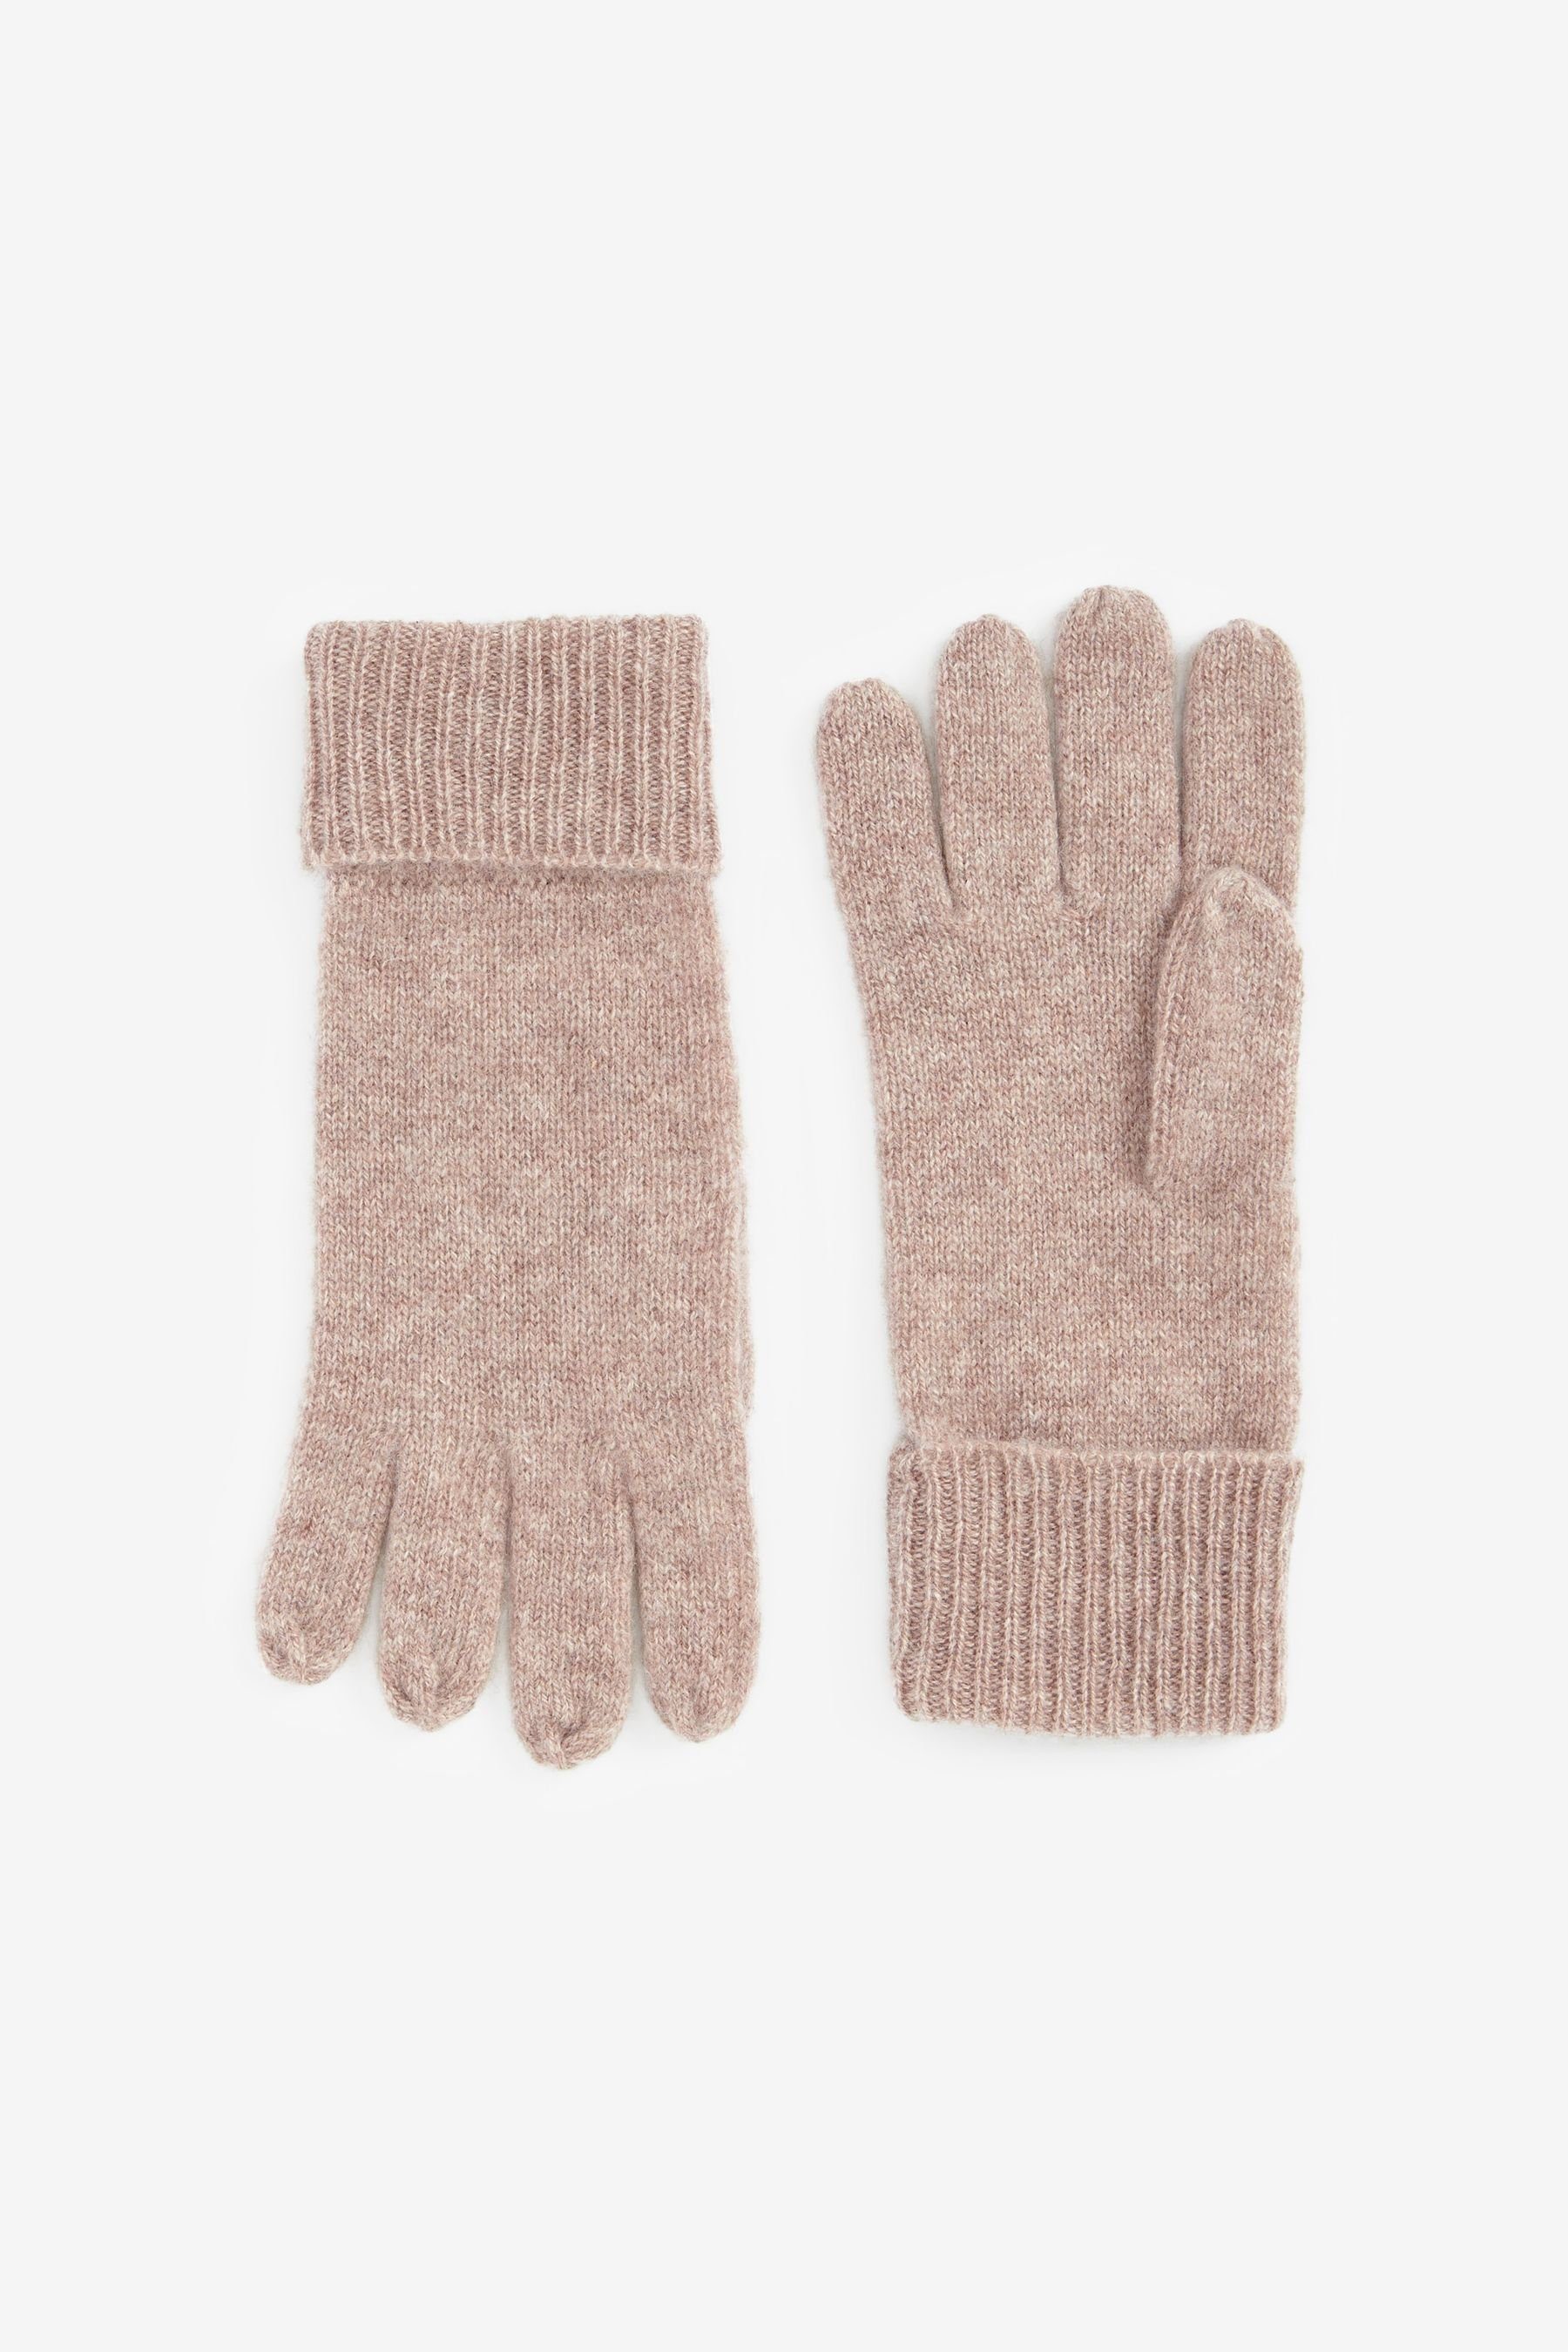 Next Strickhandschuhe Collection Luxe Handschuhe aus 100 % Kaschmir Oatmeal